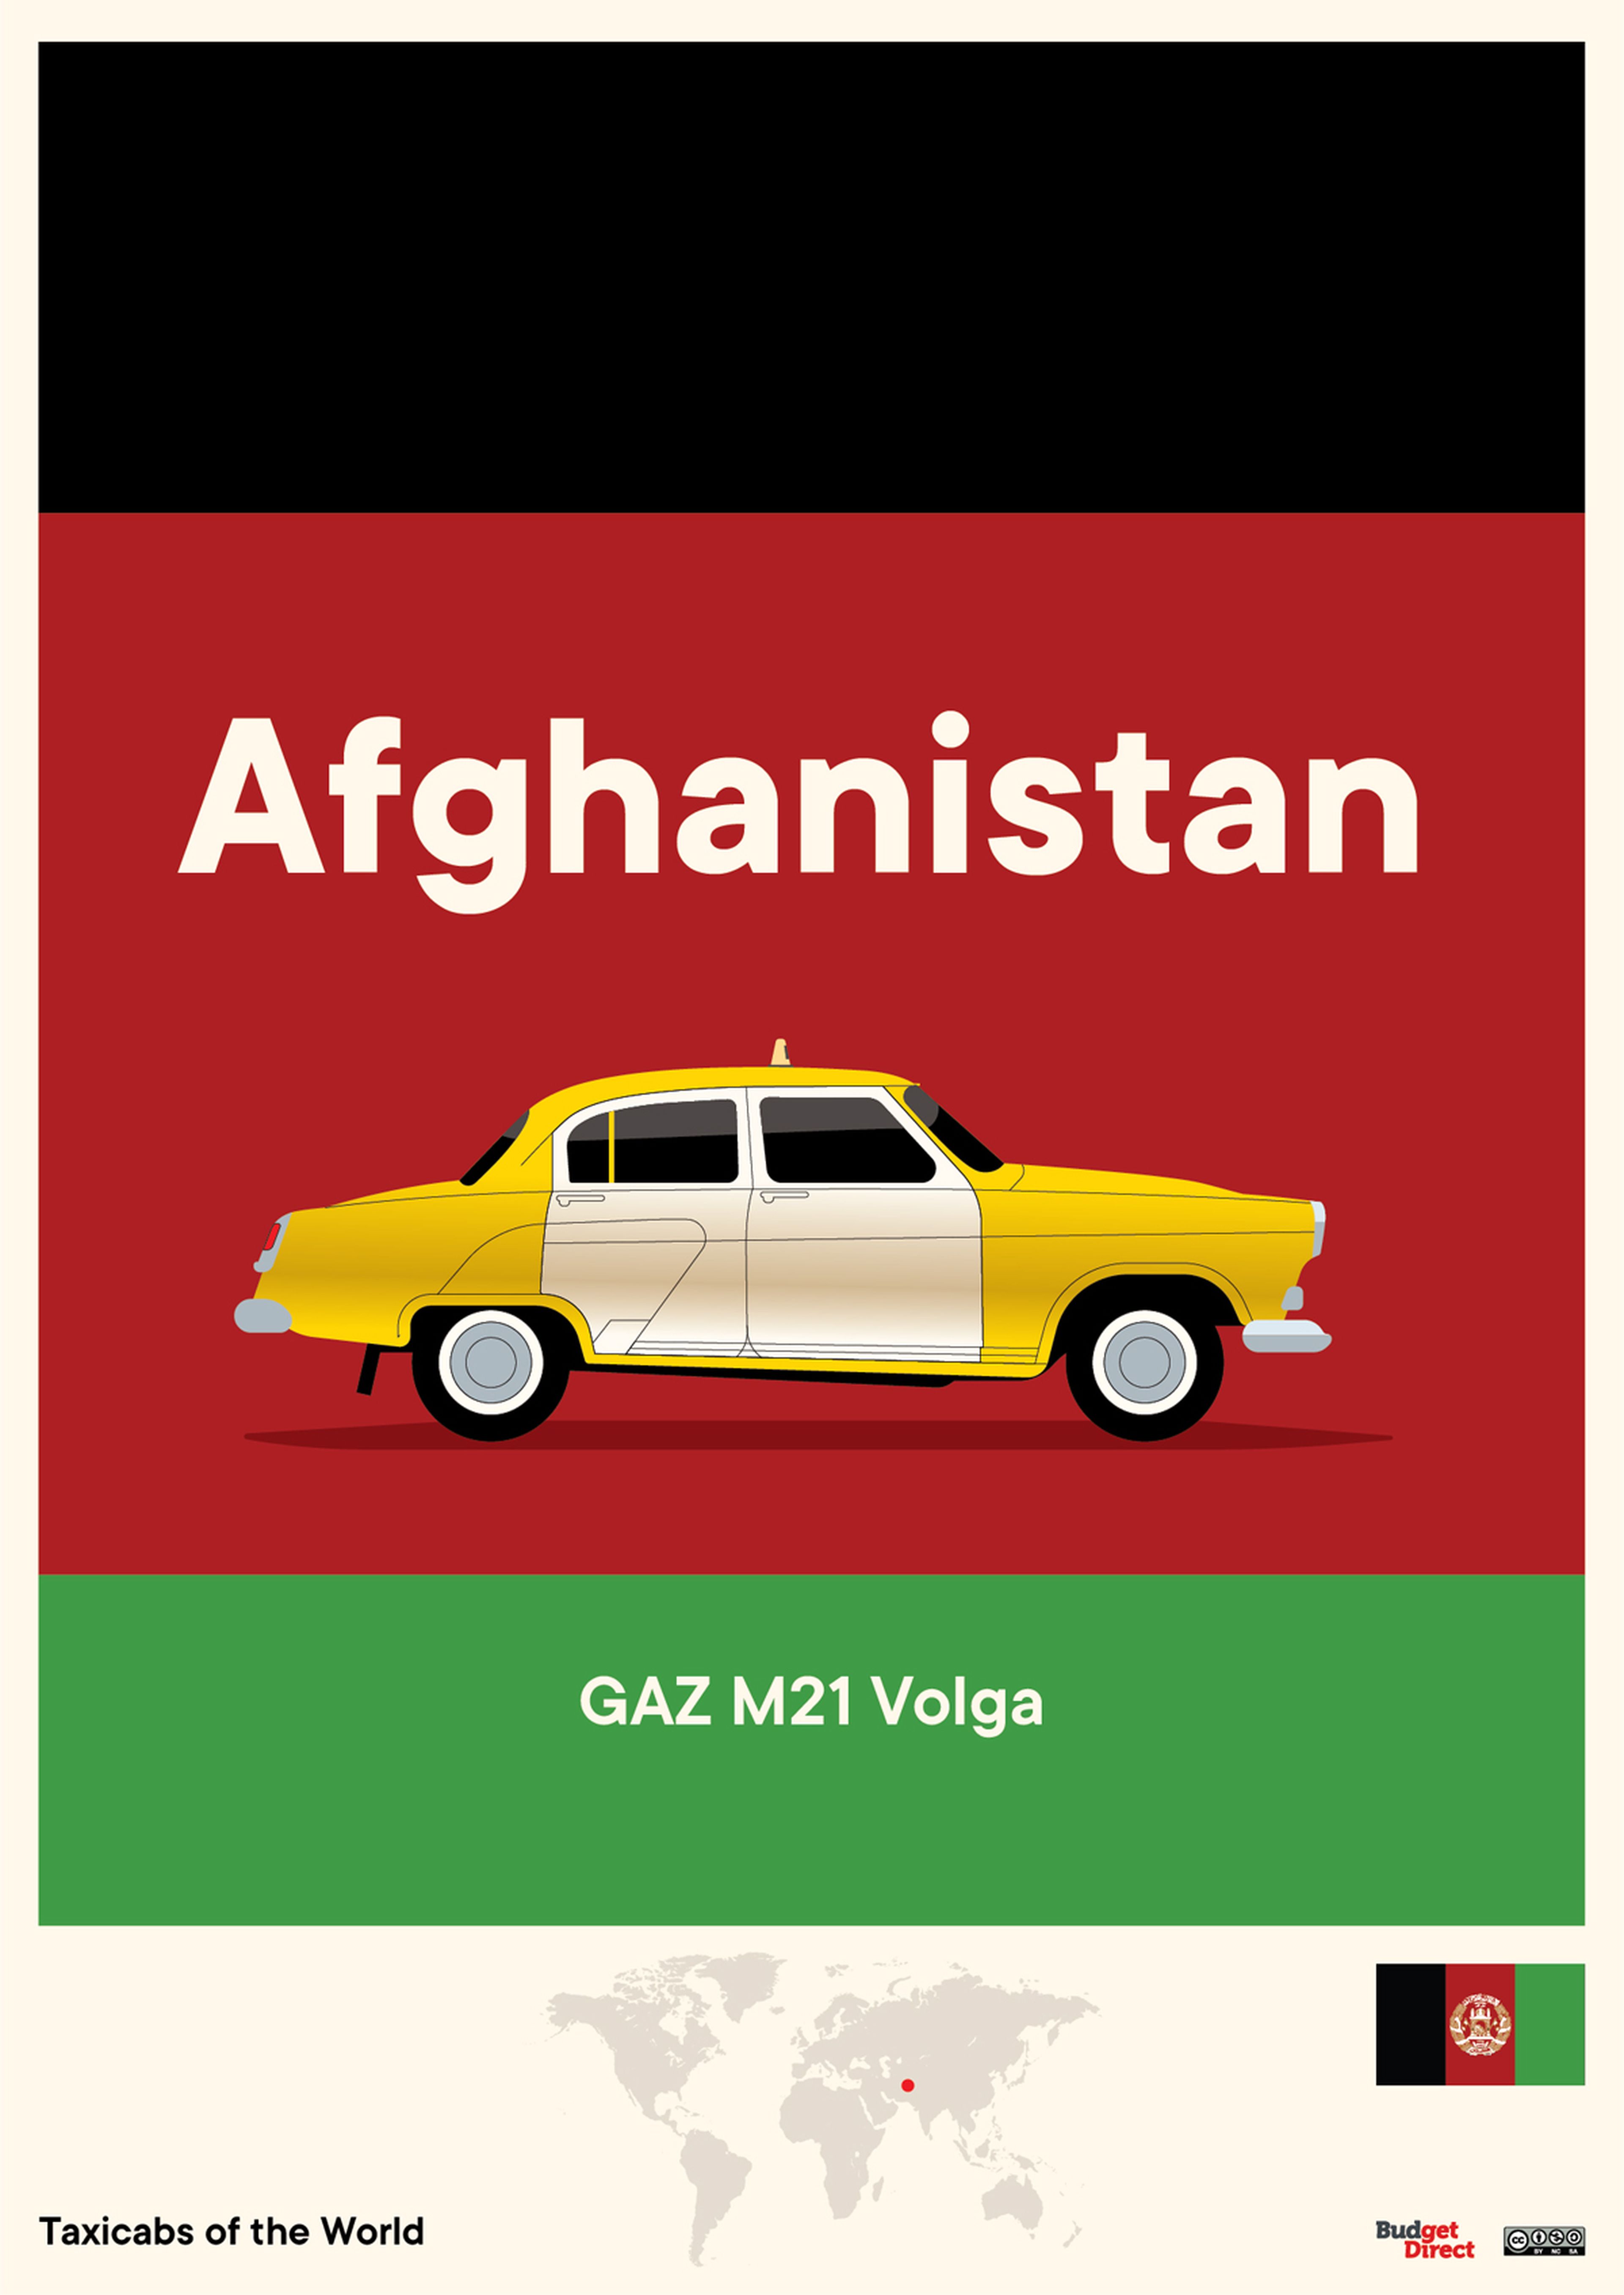 Taxis de Oriente Medio y Asia Central